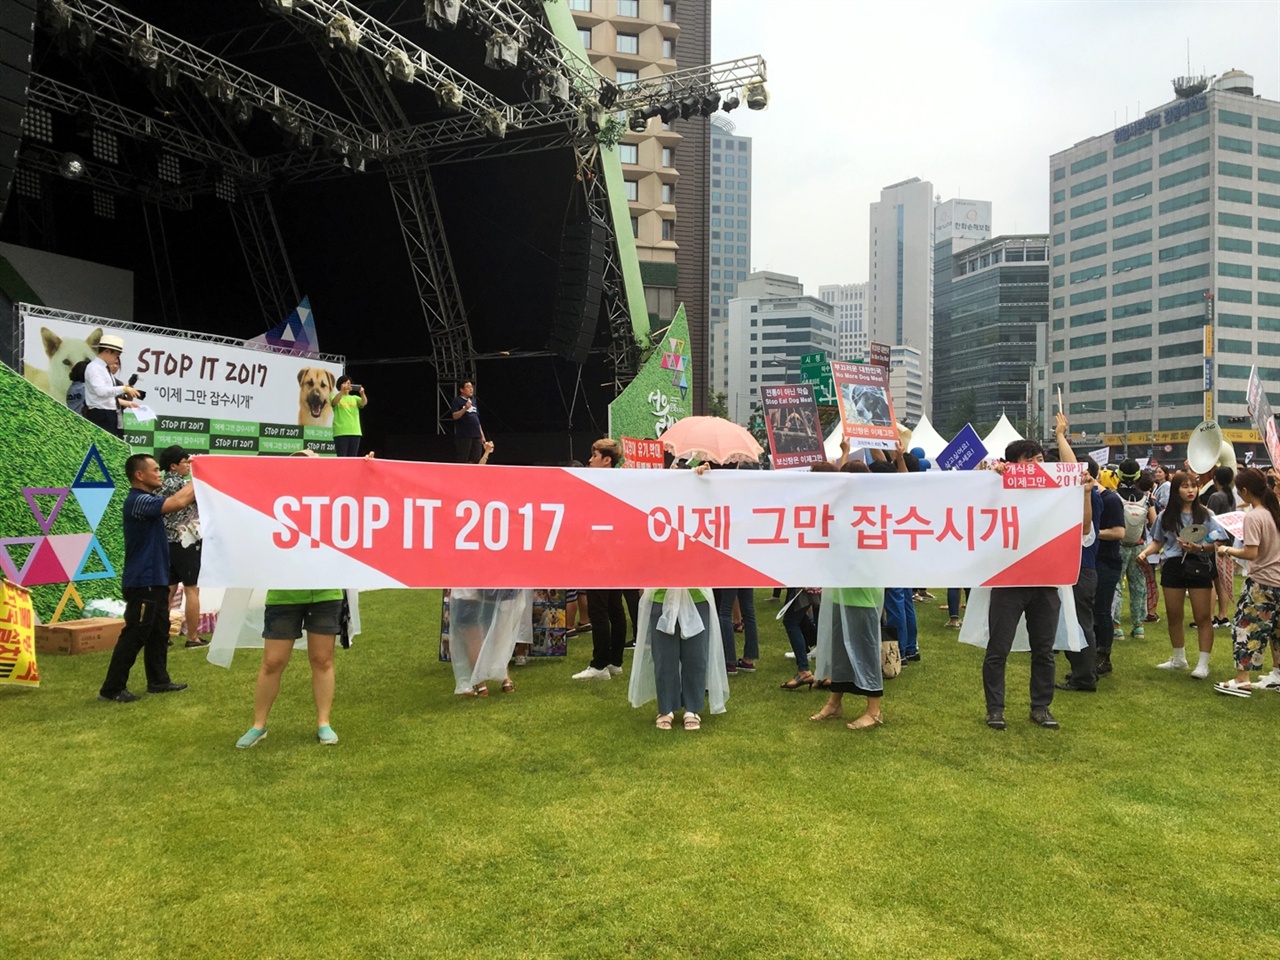  지난 7월 9일 서울 시청 광장에서 있었던 '이제 그만 잡수시개'의 중심 슬로건인 " STOP IT 2017 - 이제 그만 잡수시개'는 중의적인 표현을 사용한 재치있는 슬로건이다.